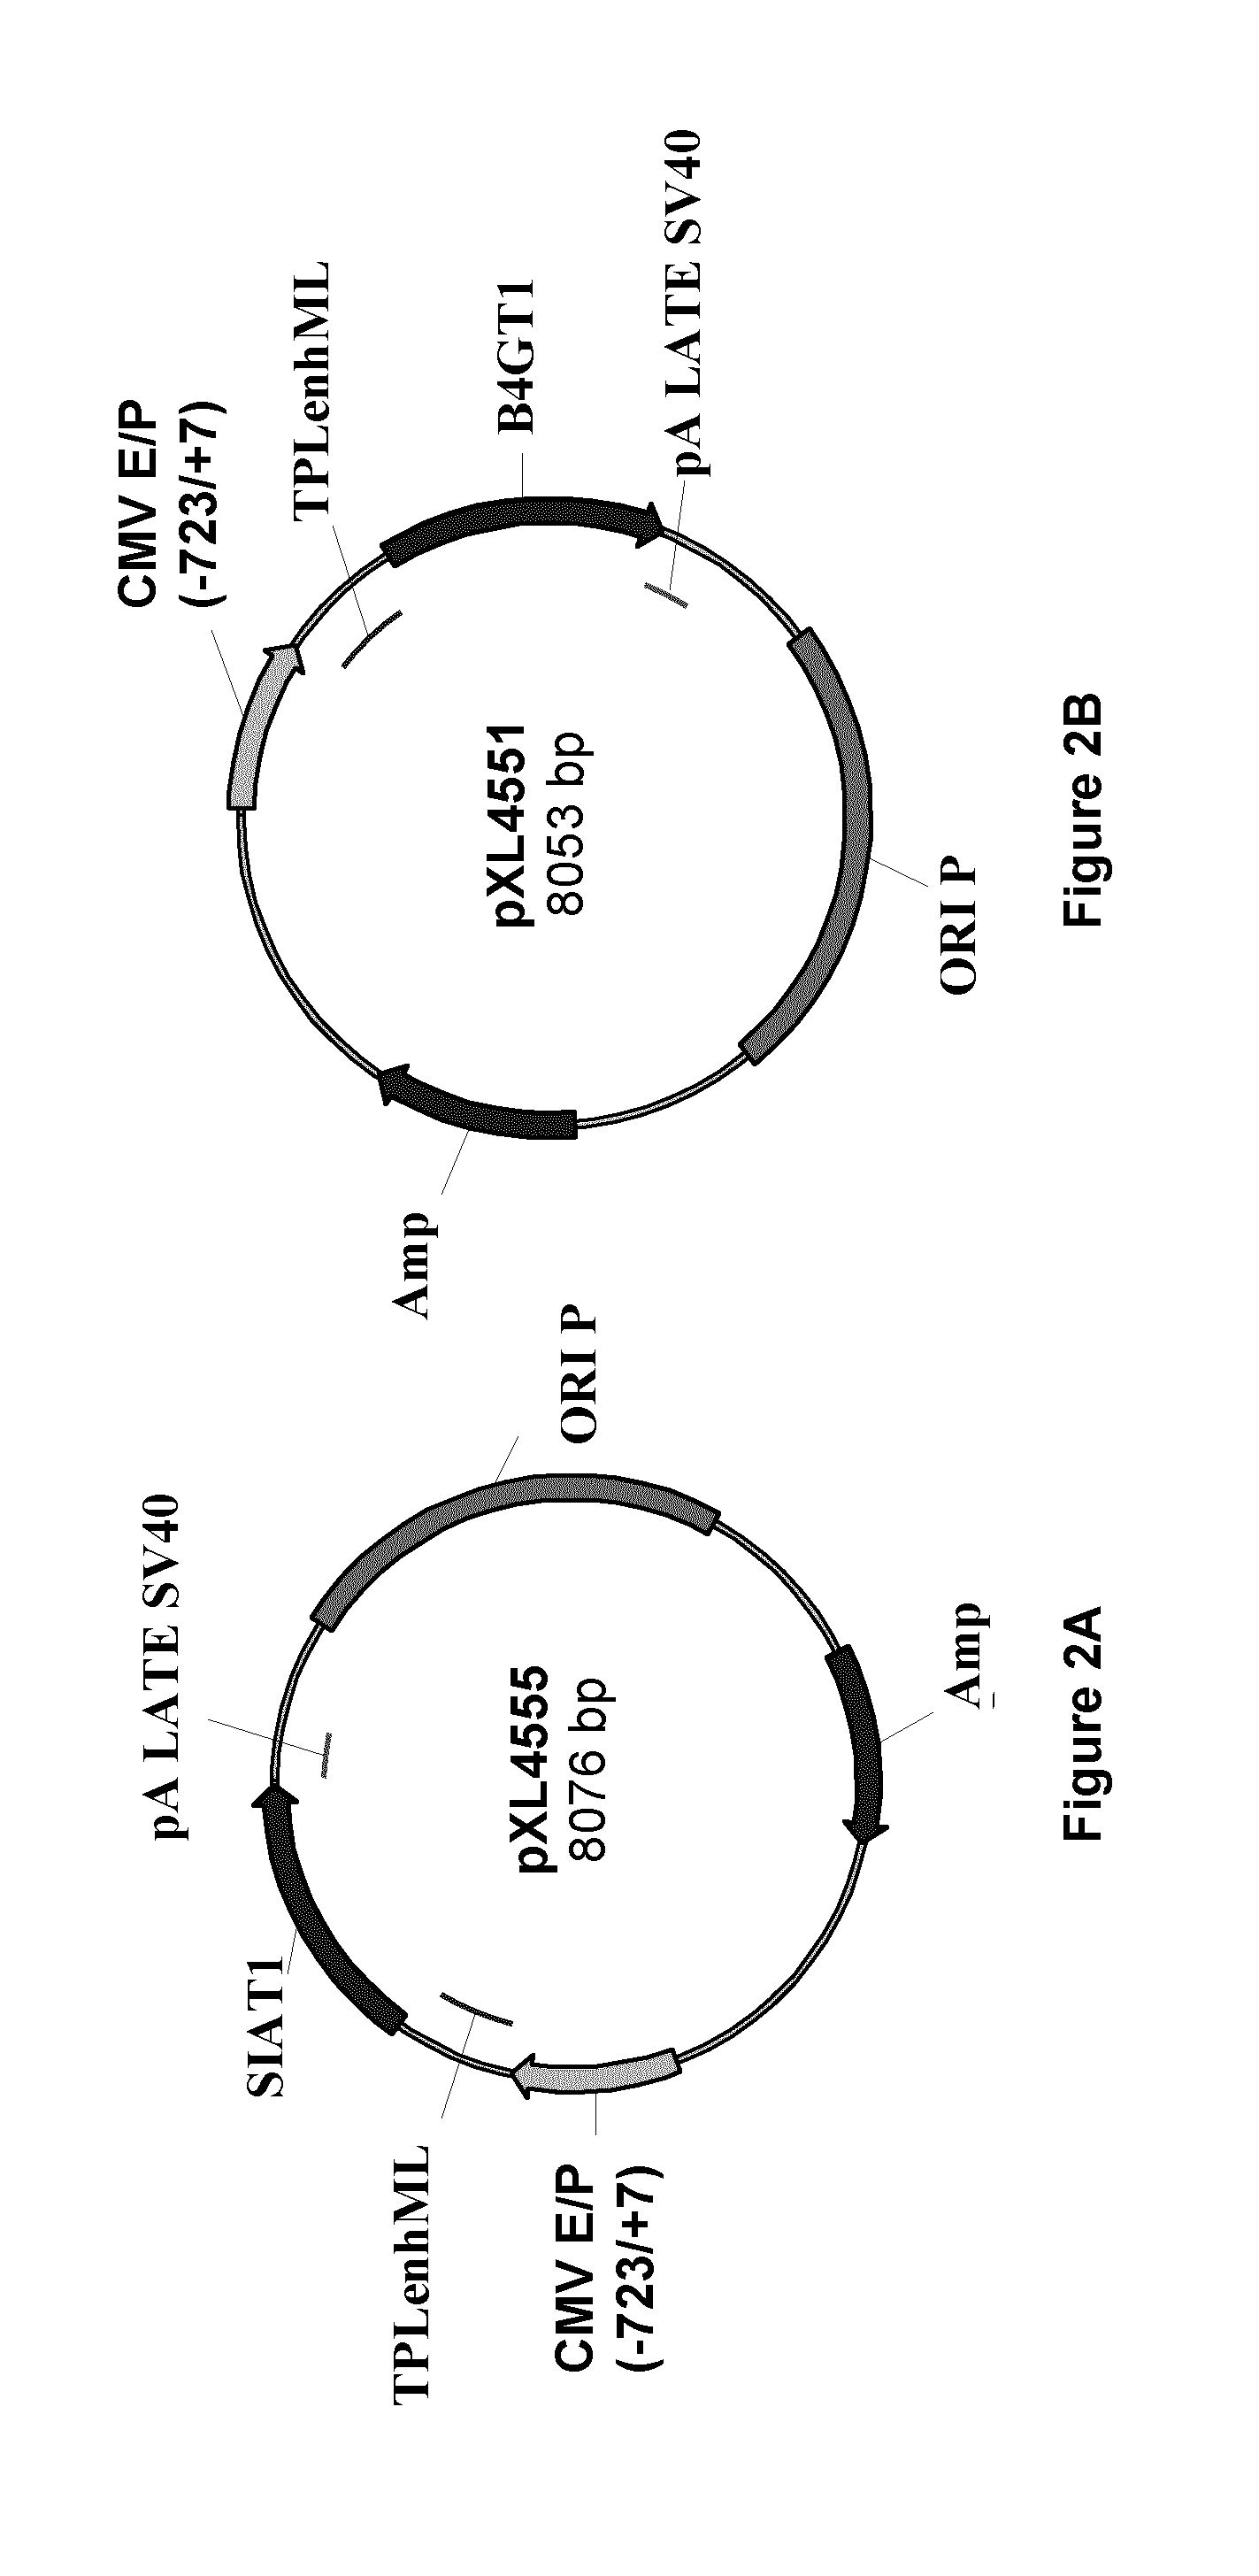 Method of production of sialylated antibodies